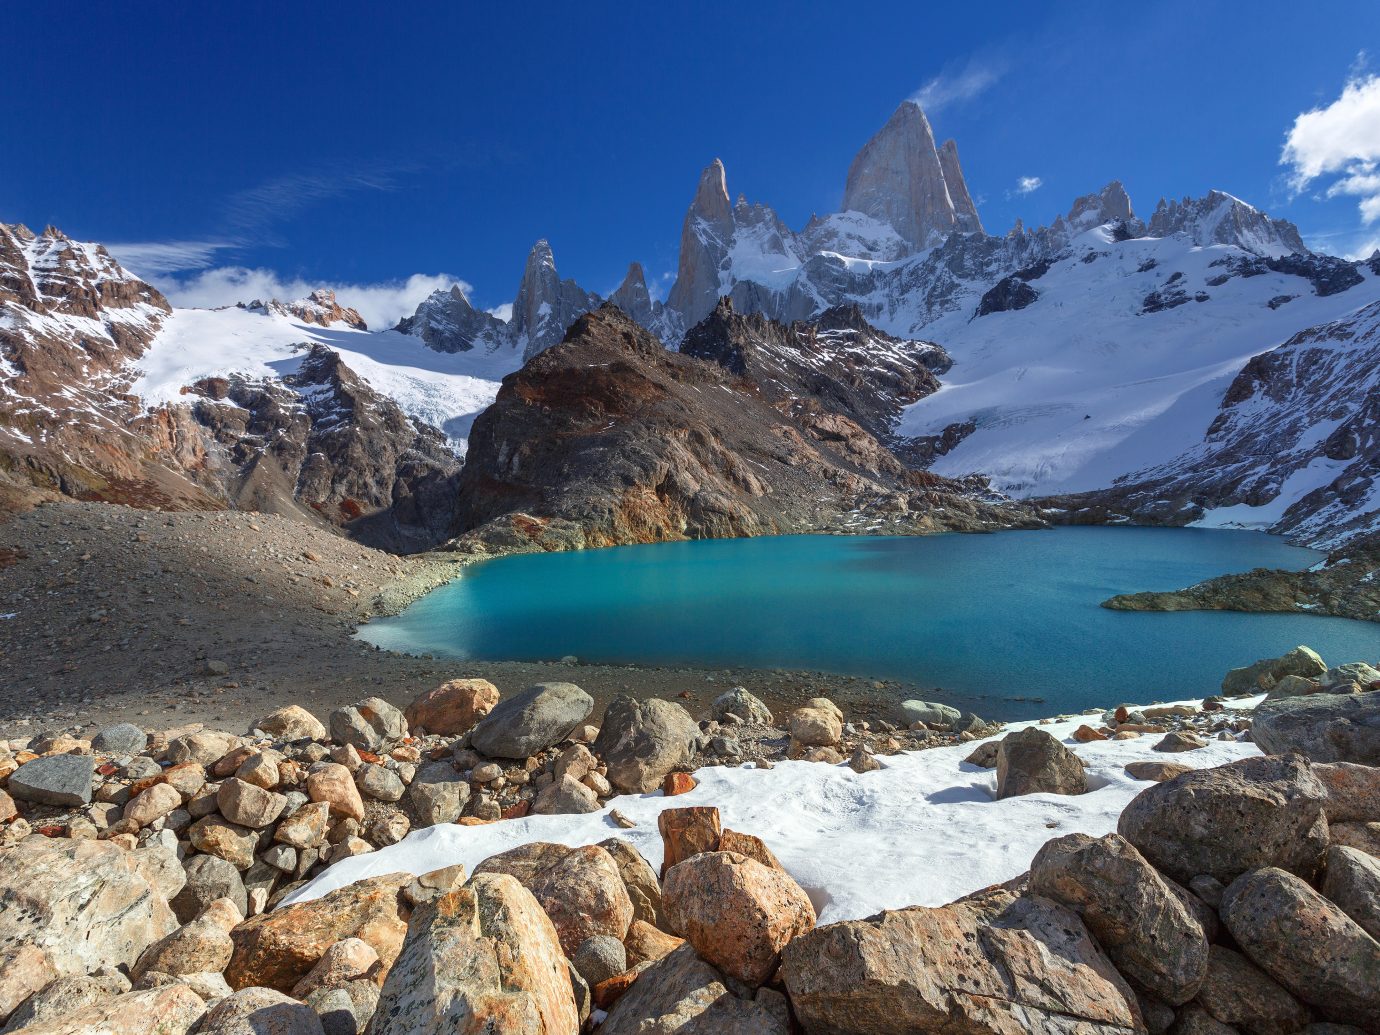 Mount Fitz Roy, Los Glaciares National Park, Patagonia